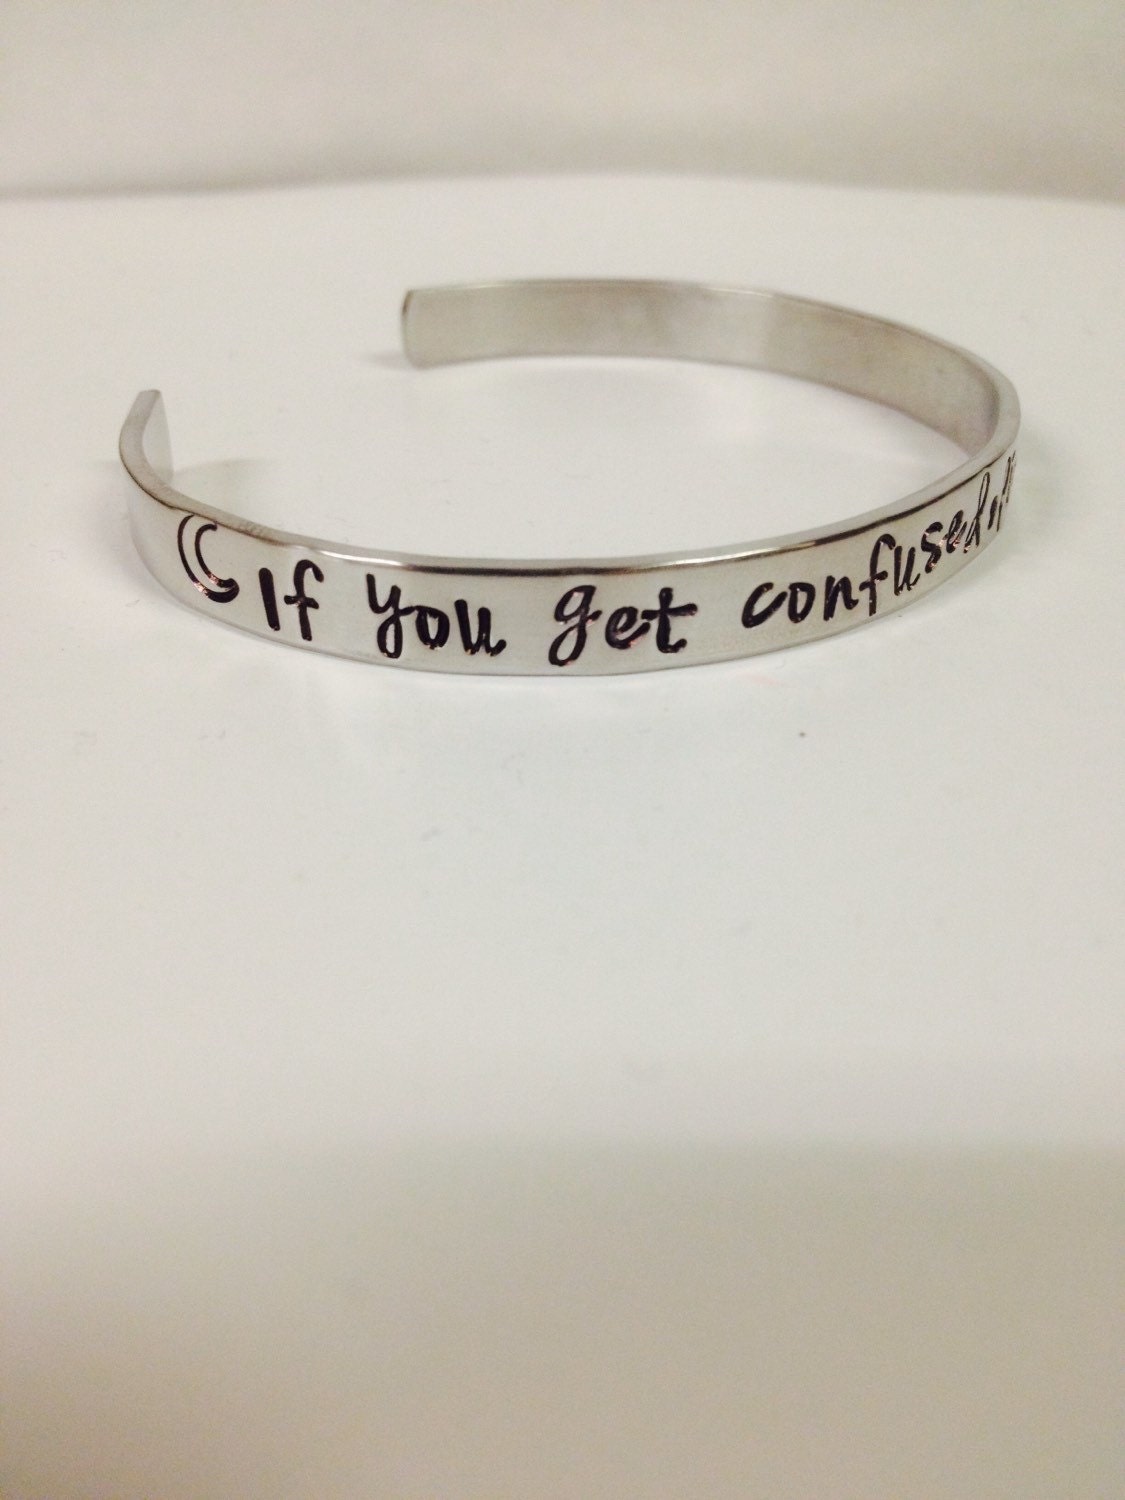 Grateful dead cuff bracelet/ | Etsy